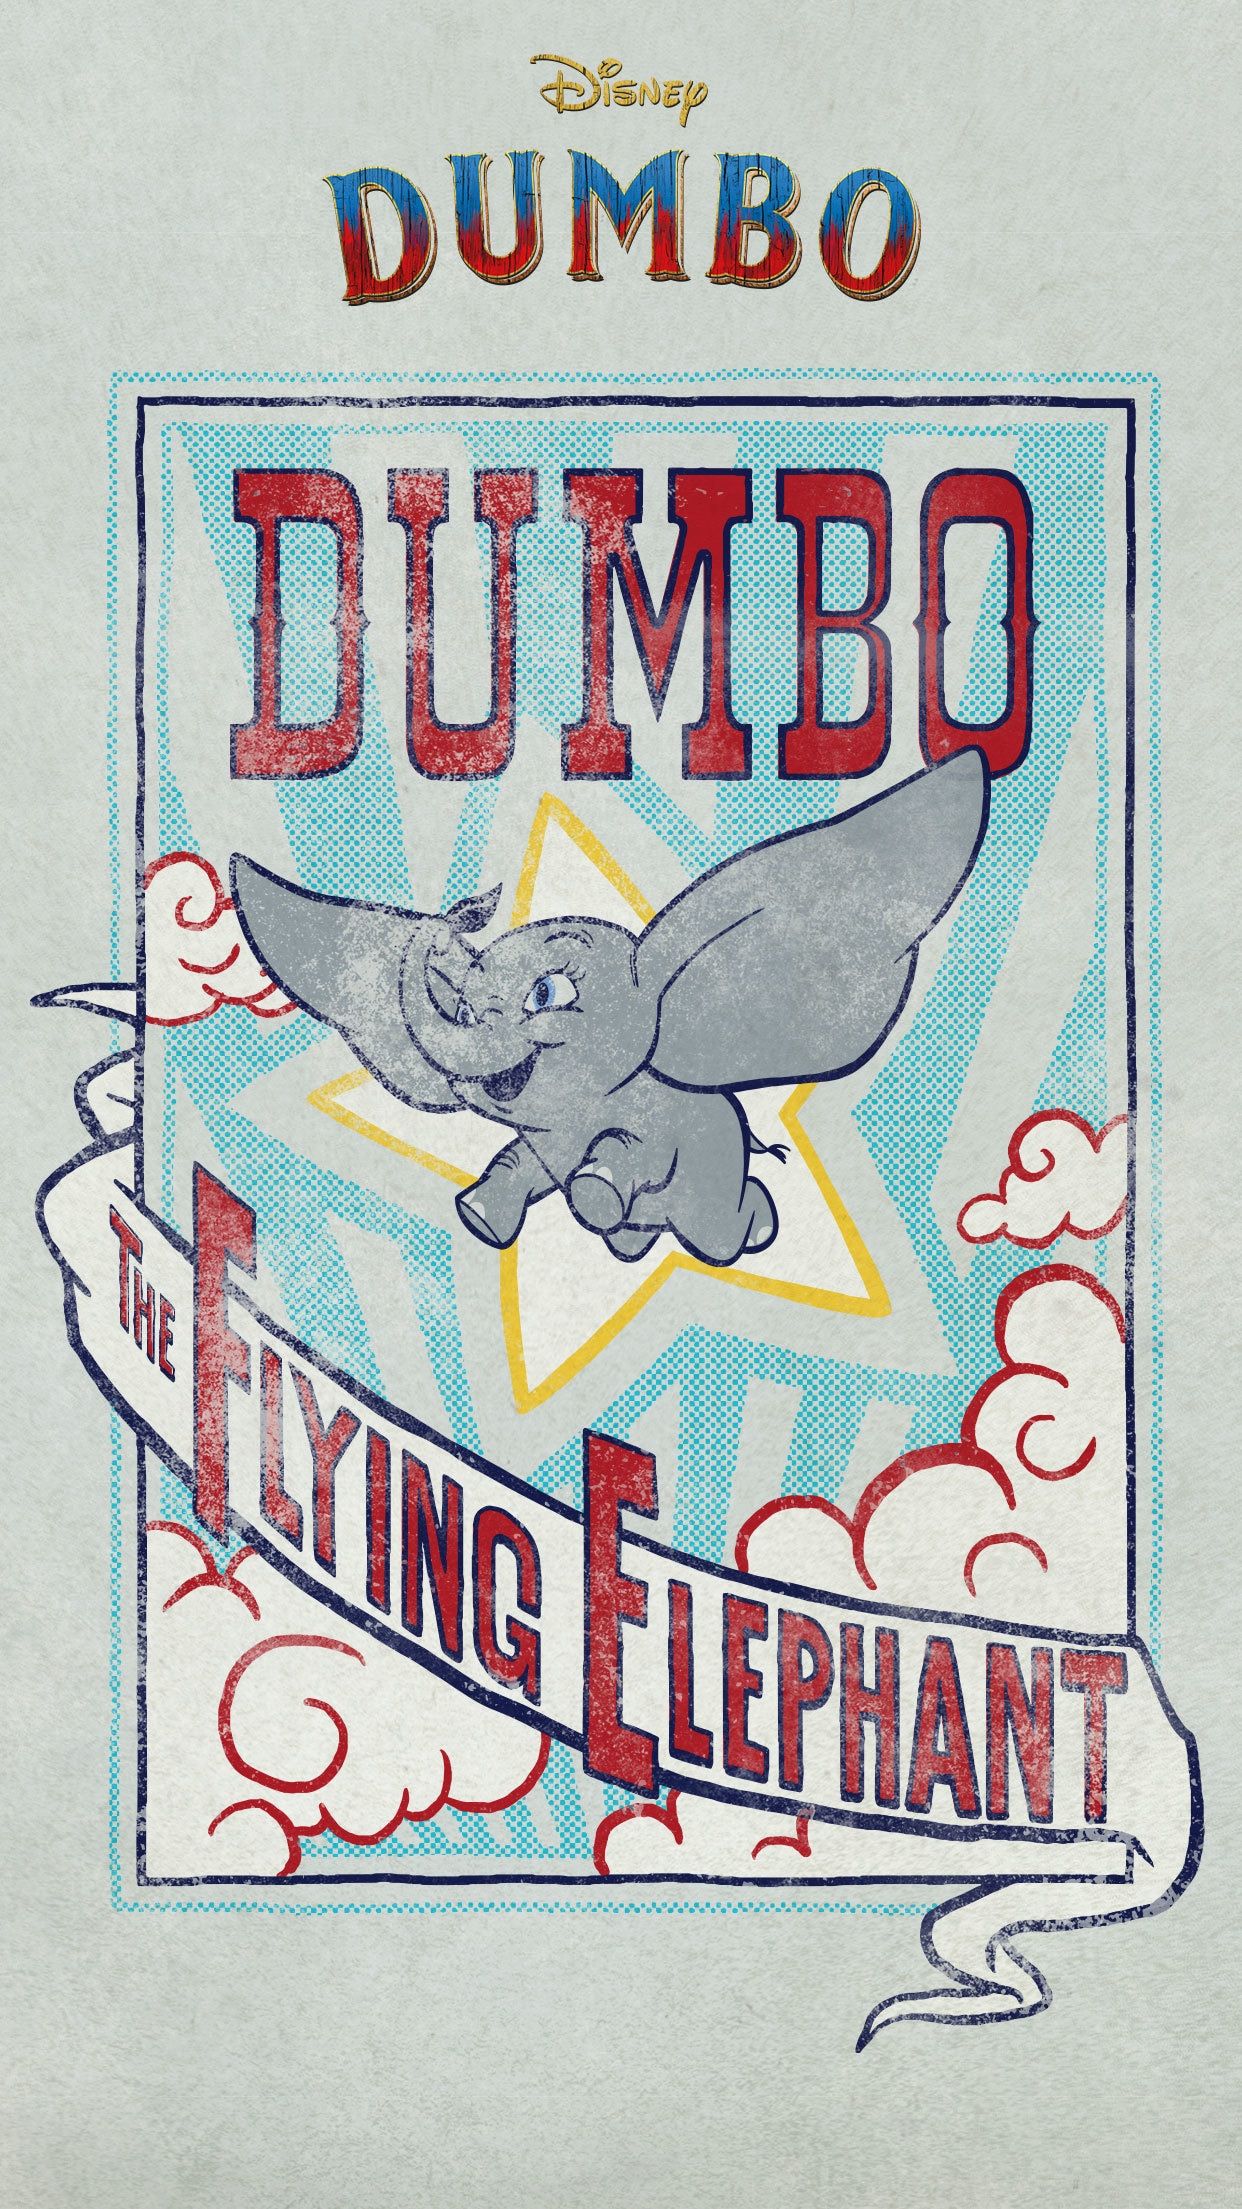 Dumbo Mobile Wallpaper. Disney Singapore. Vintage disney posters, Disney posters, Disney movie posters